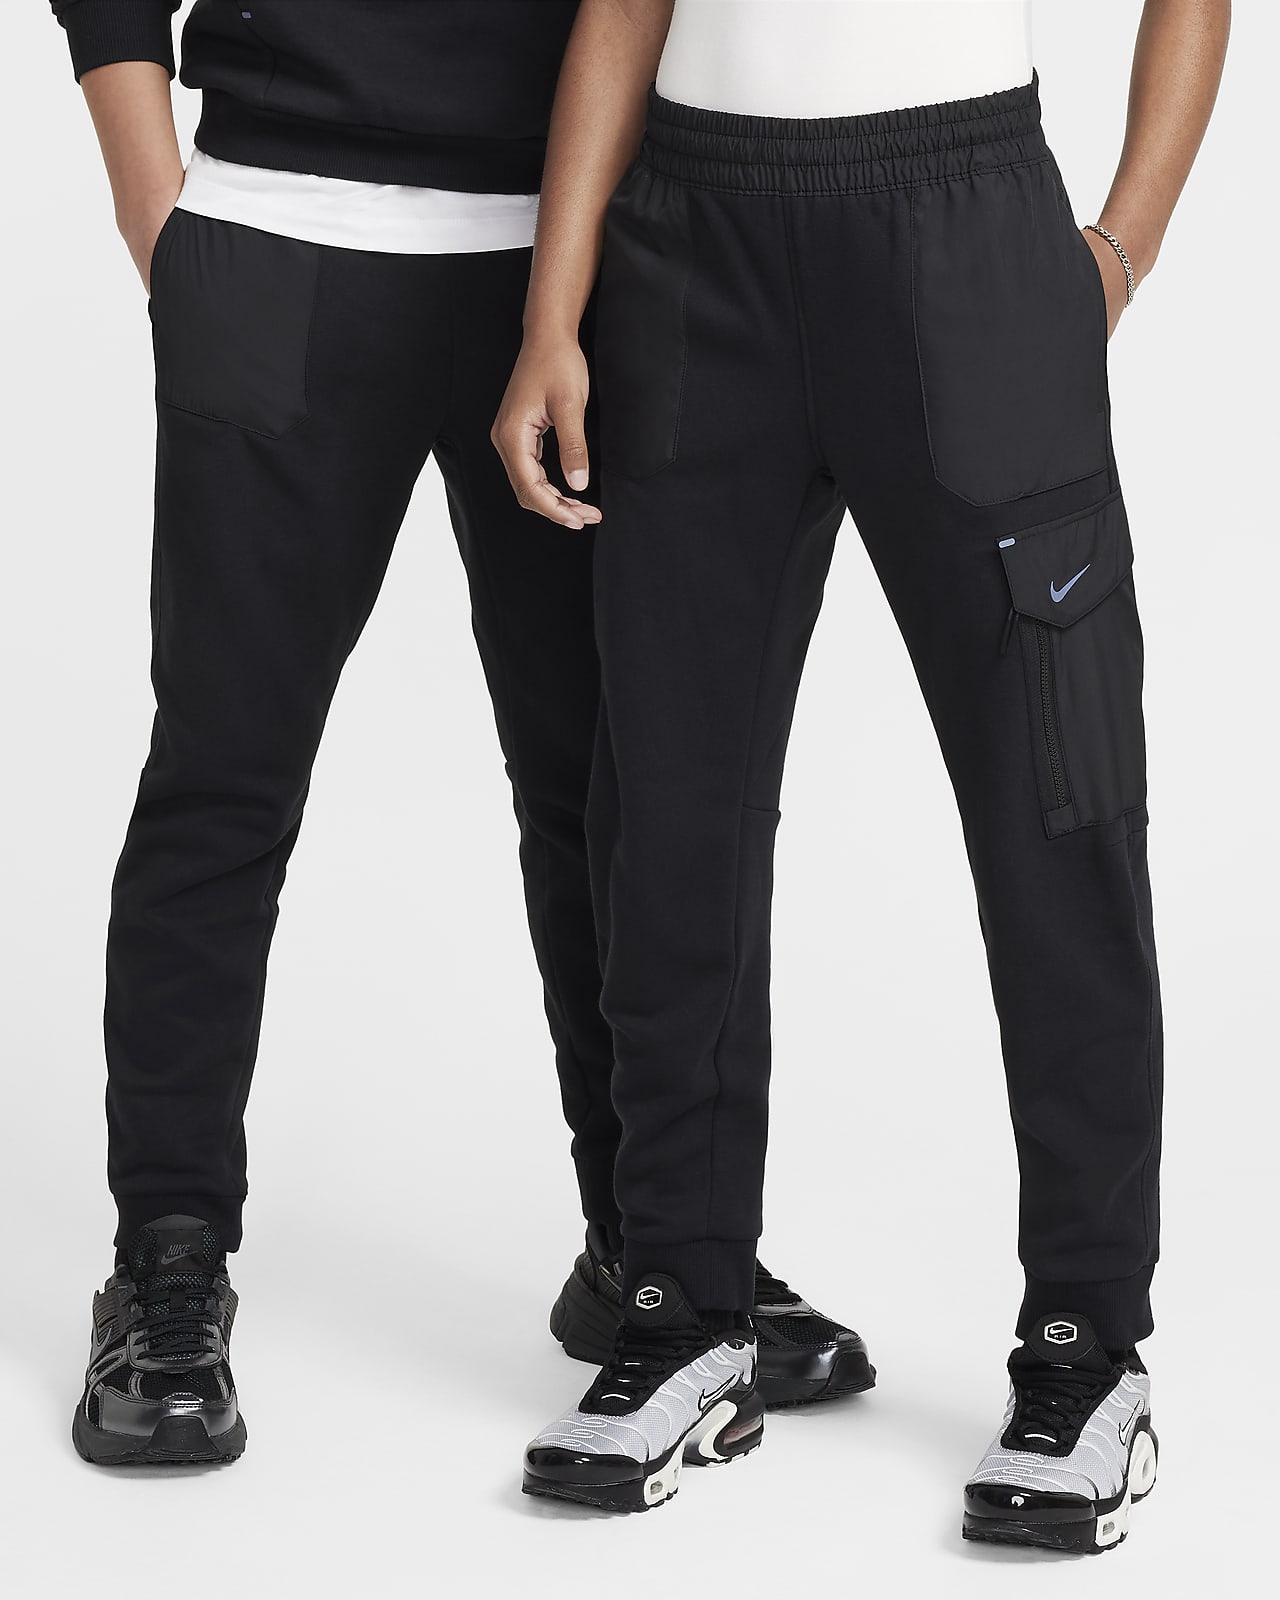 Pantaloni in fleece Nike Sportswear City Utility EasyOn – Ragazzo/a